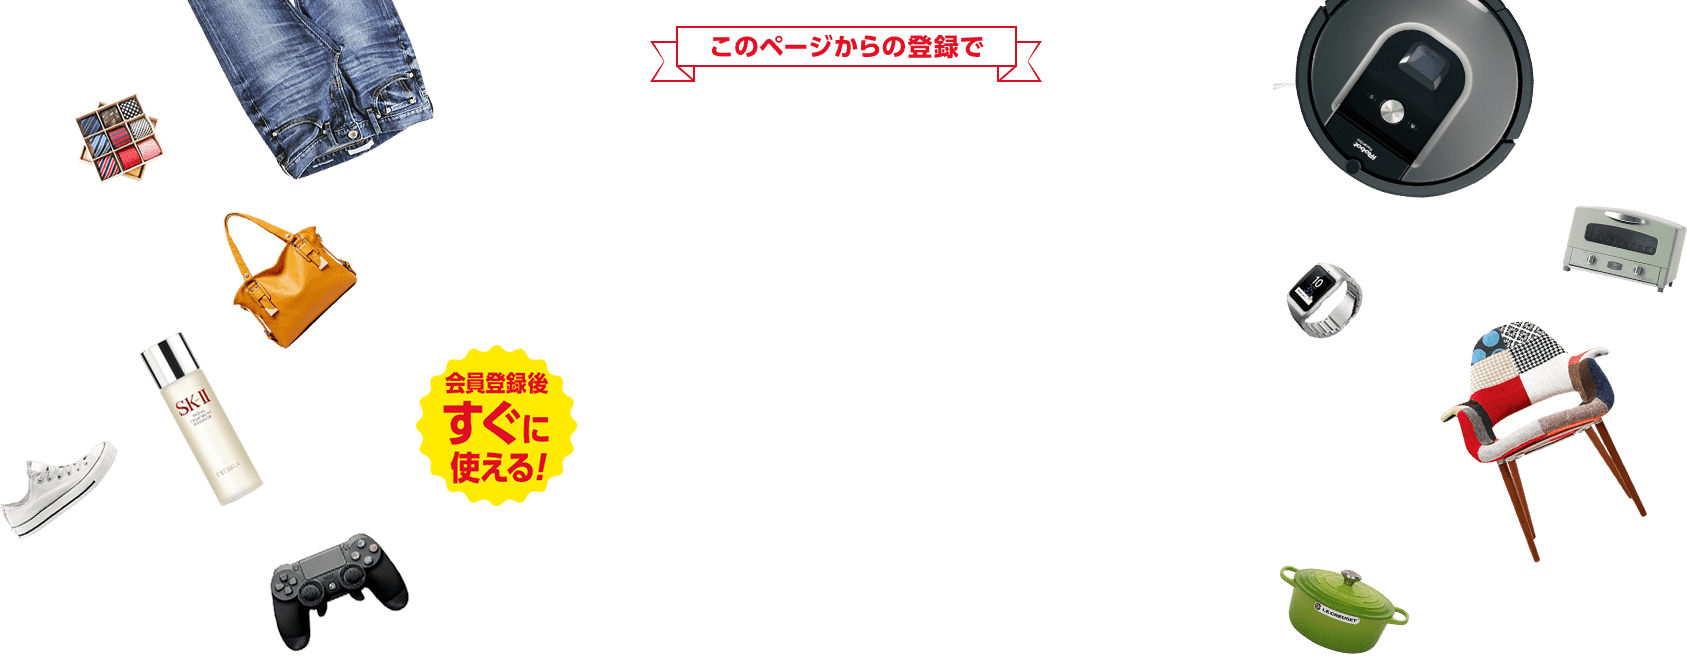 Yahoo!プレミアム月額会員費が最大6カ月分無料、さらにYahoo!ショッピングで会員登録後にすぐ使える3,000円クーポンをプレゼント！